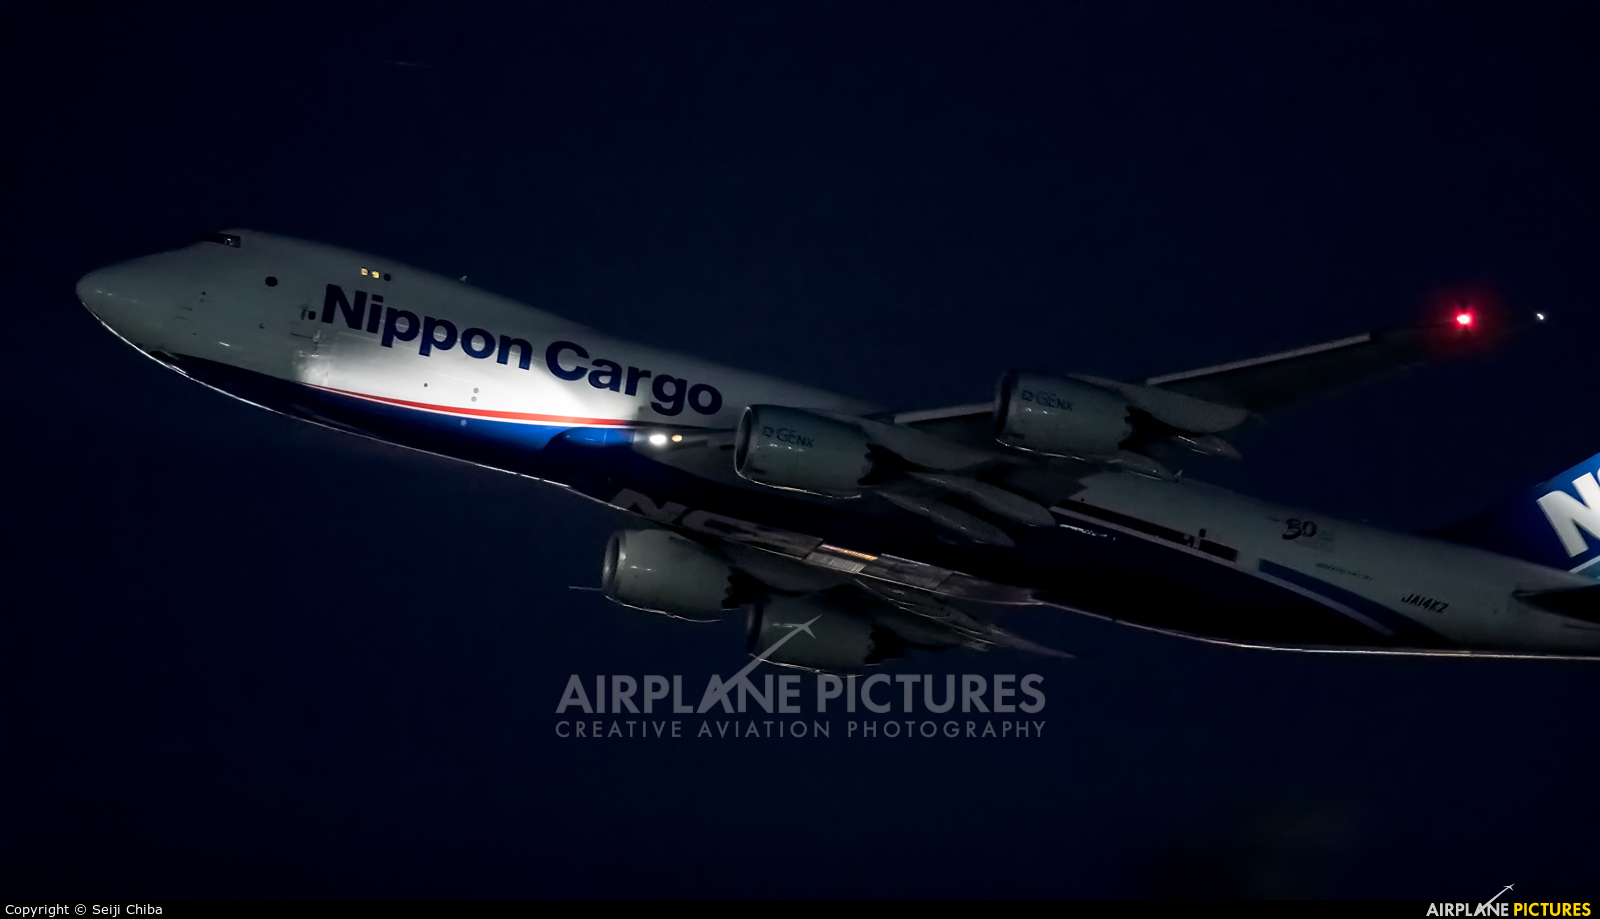 Nippon Cargo Airlines JA14KZ aircraft at Tokyo - Narita Intl